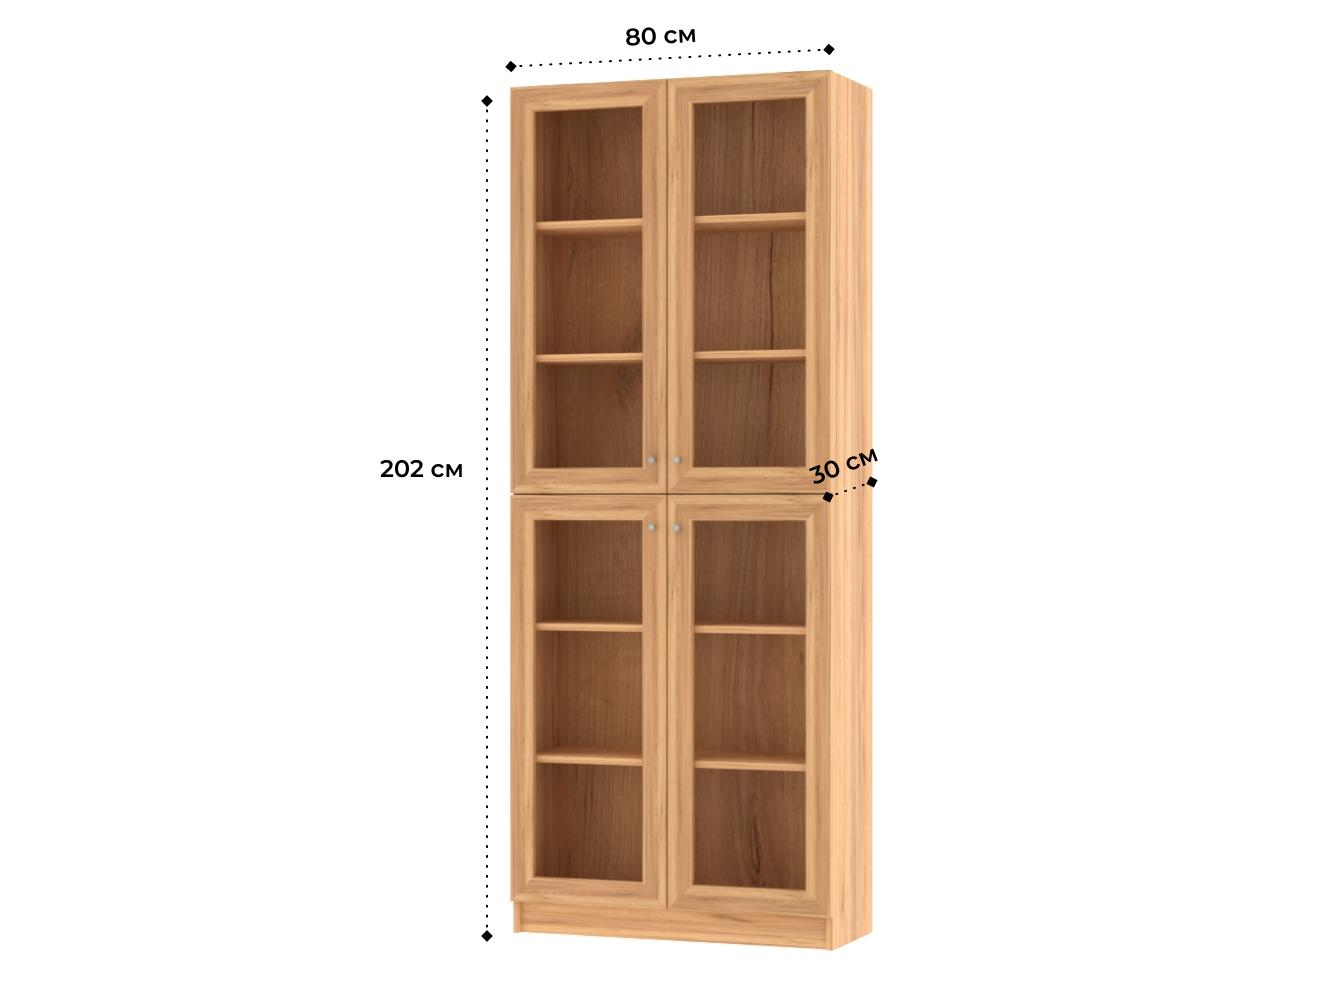  Книжный шкаф Билли 335 oak gold craft ИКЕА (IKEA) изображение товара